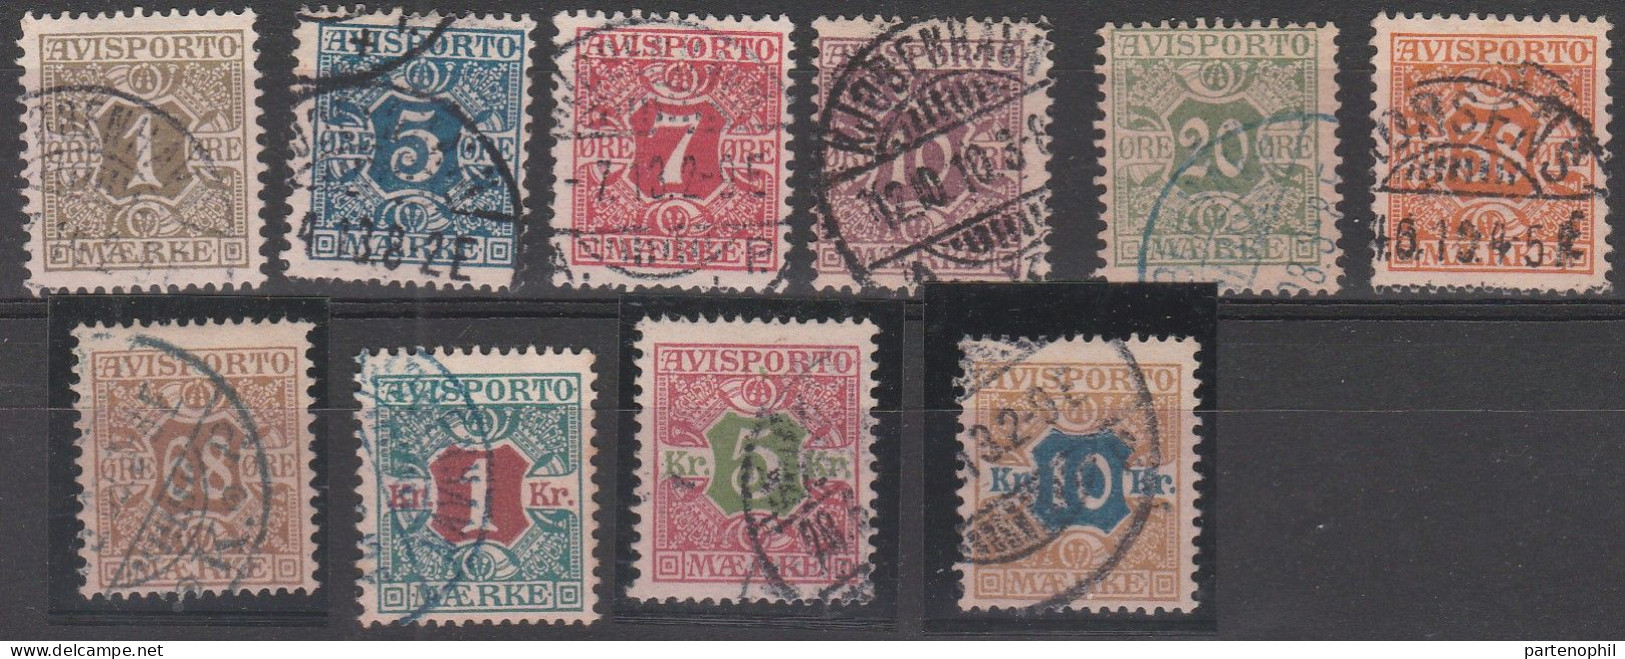 458 - Denmark Danimarca 1907 - Giornali - Cifra Al Centro N. 1/10. Cat. € 180,00. SPL - Used Stamps